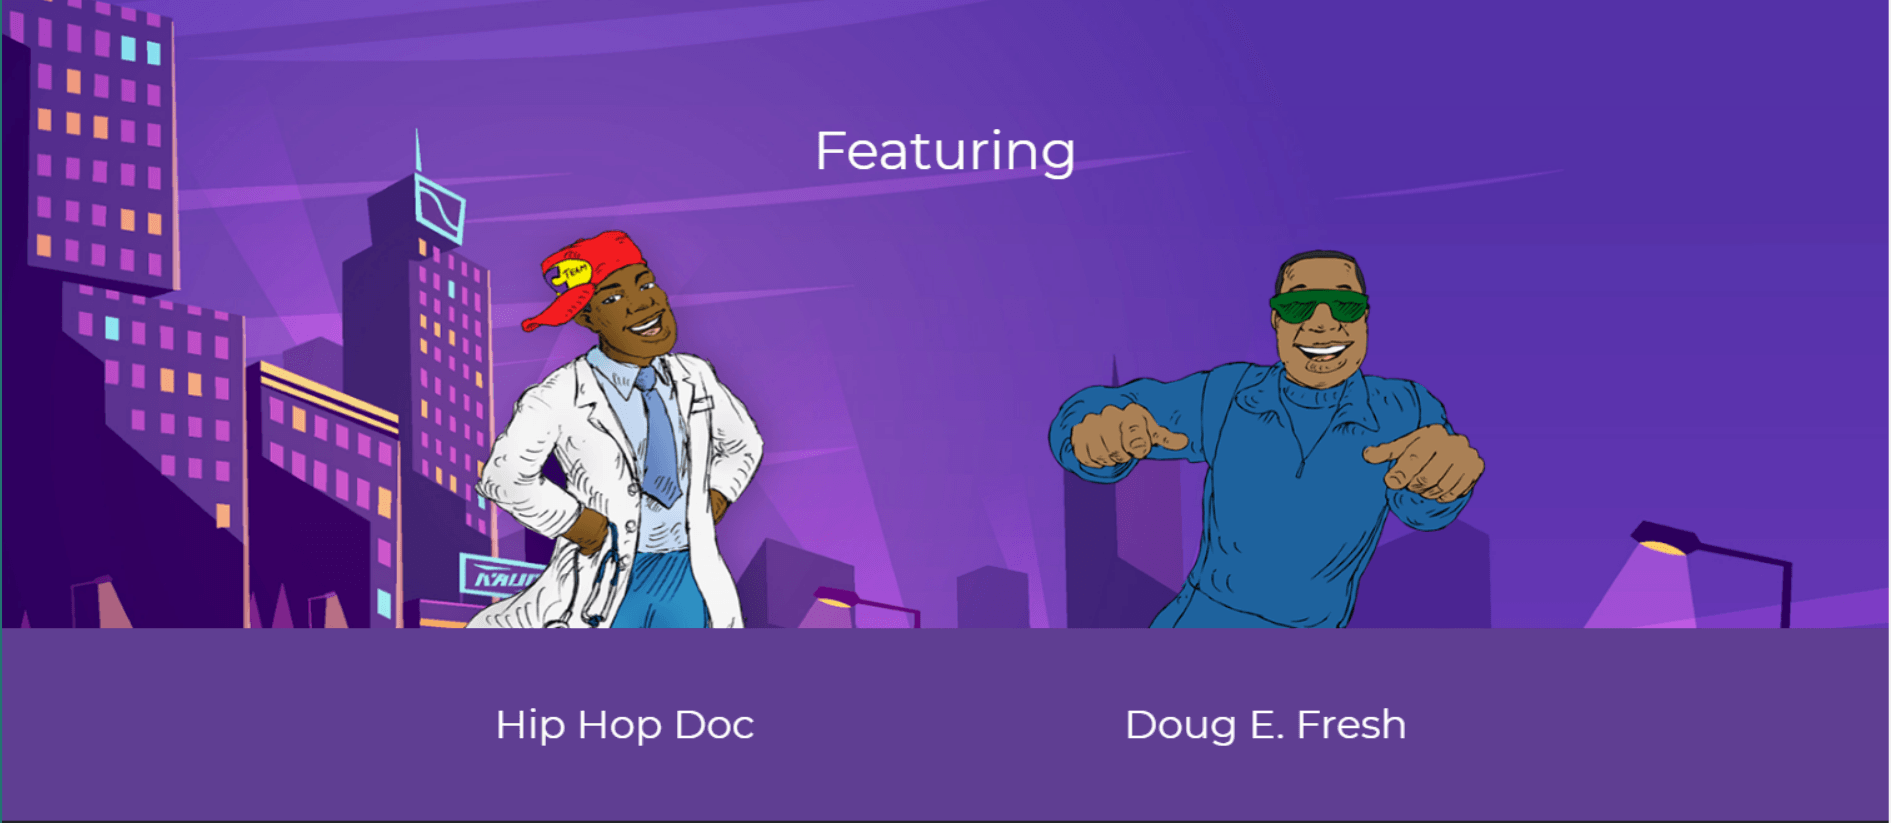 HipHop Doc